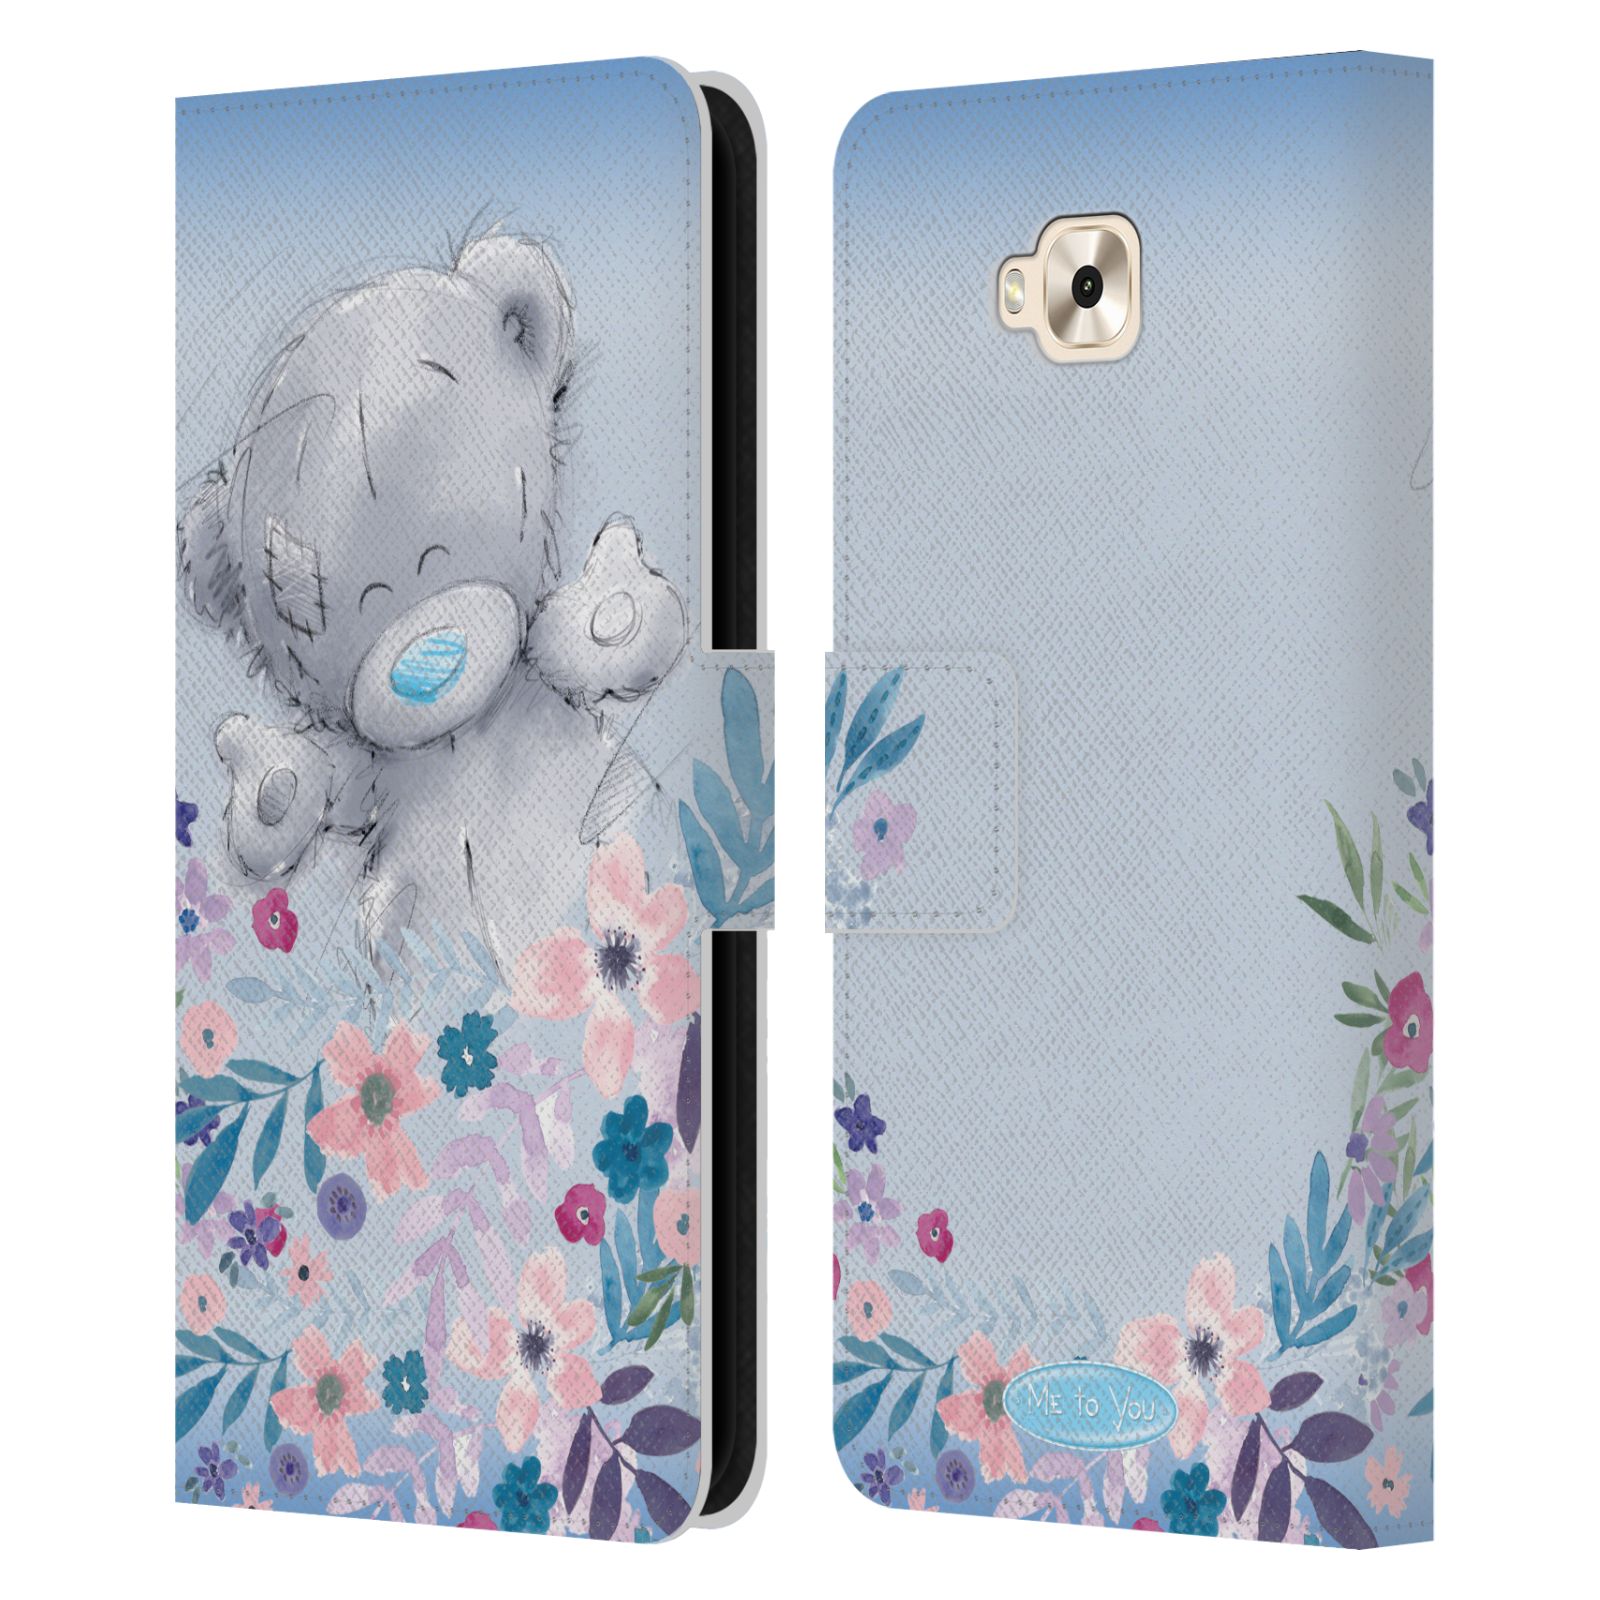 Pouzdro na mobil Asus Zenfone 4 Selfie ZD553KL  - HEAD CASE - Me To You - Medvídek mezi květinami